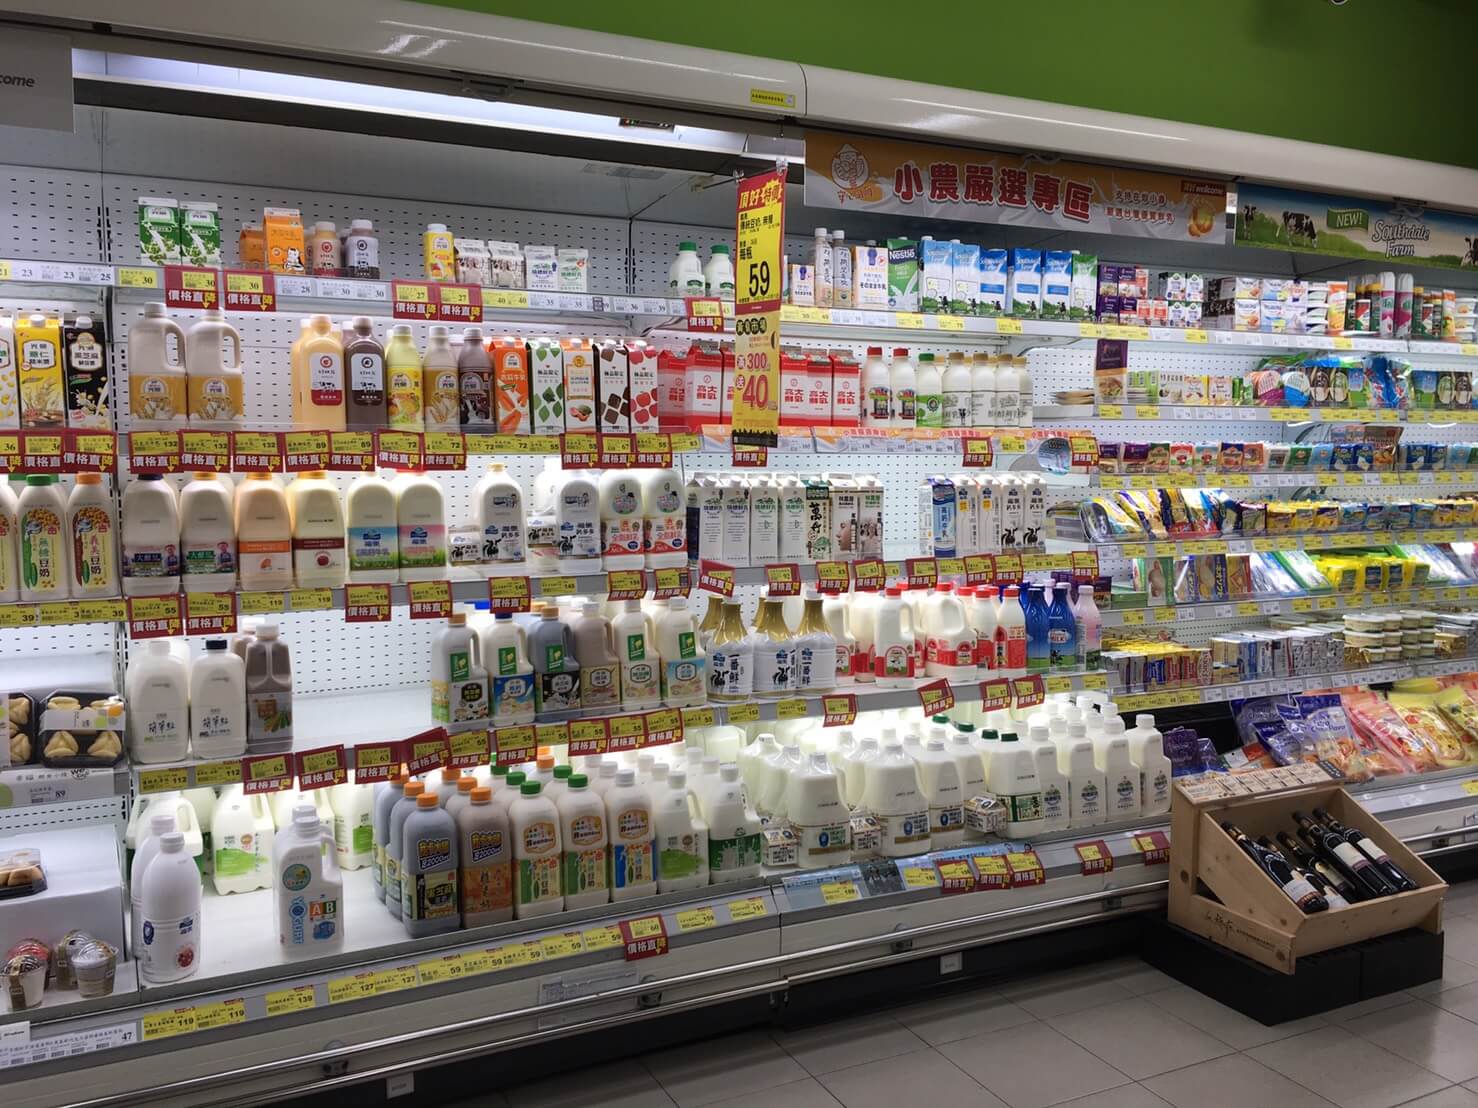 冷藏櫃一列排開多達8~10種的各家品牌牛乳、牛奶、鮮奶、鮮乳、乳飲品